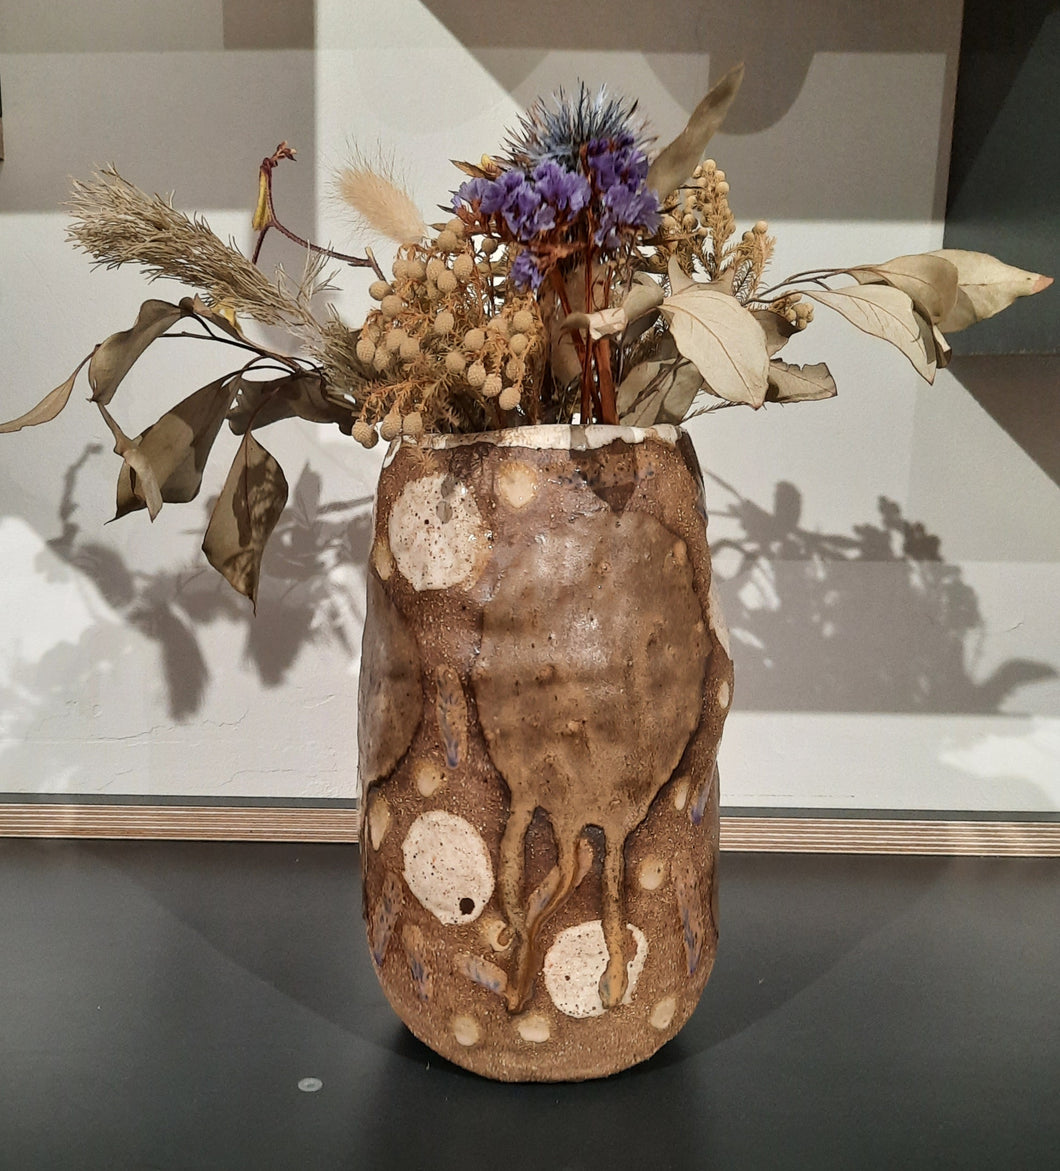 Handmade Organic Rustic Vase - Large/Natural